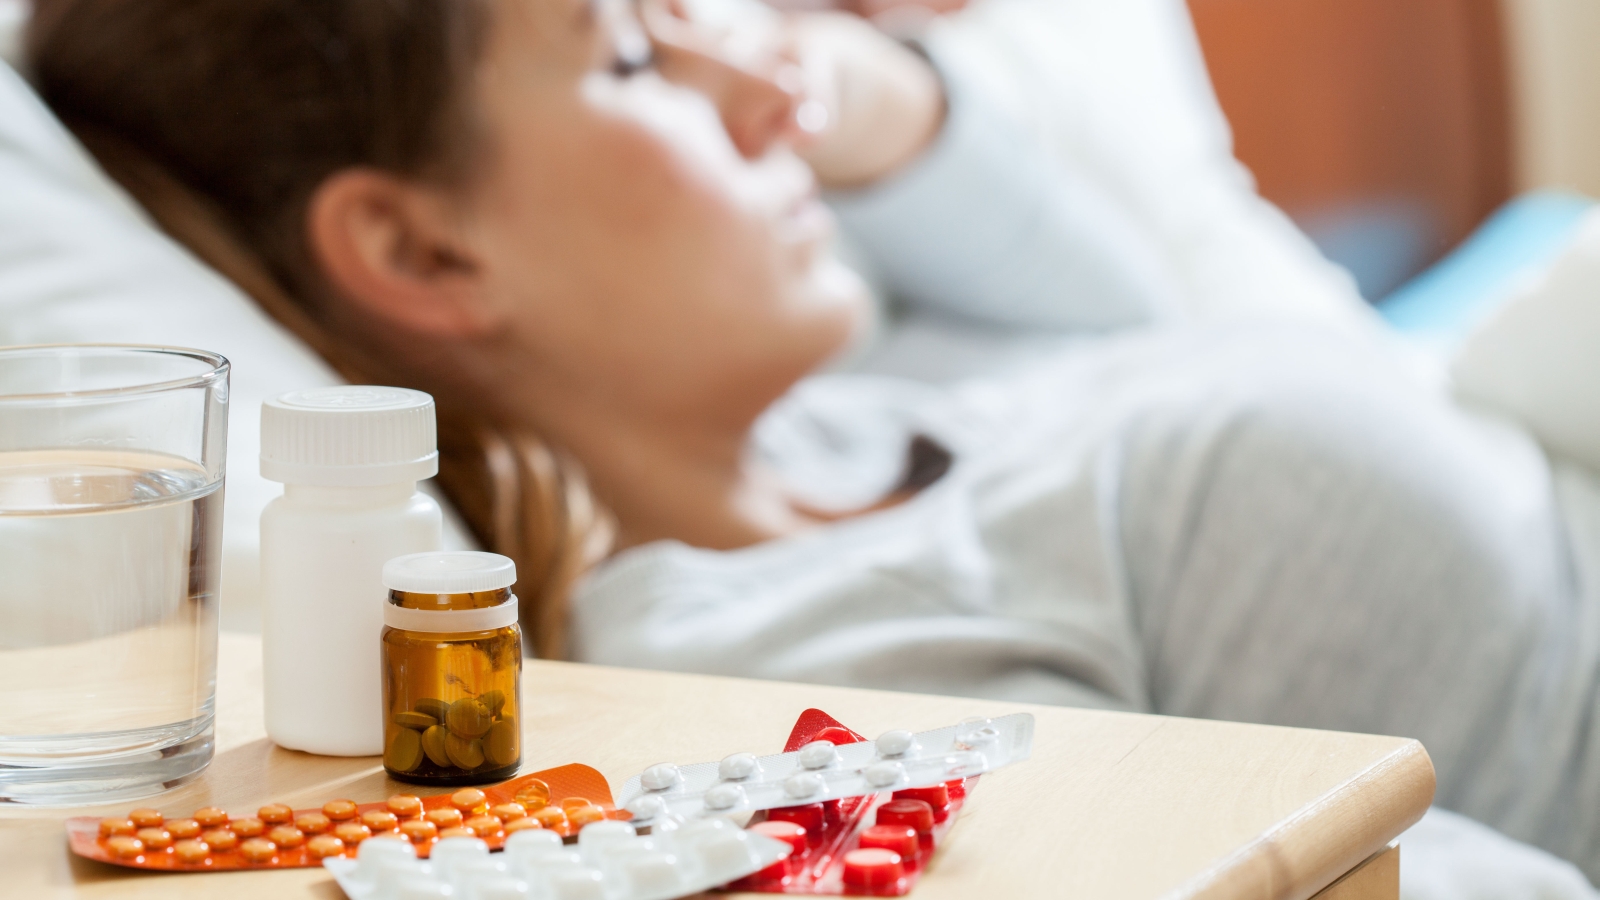 أدوية الزكام التي نتناولها دون وصفة طبية خطيرة – جريدة الغد